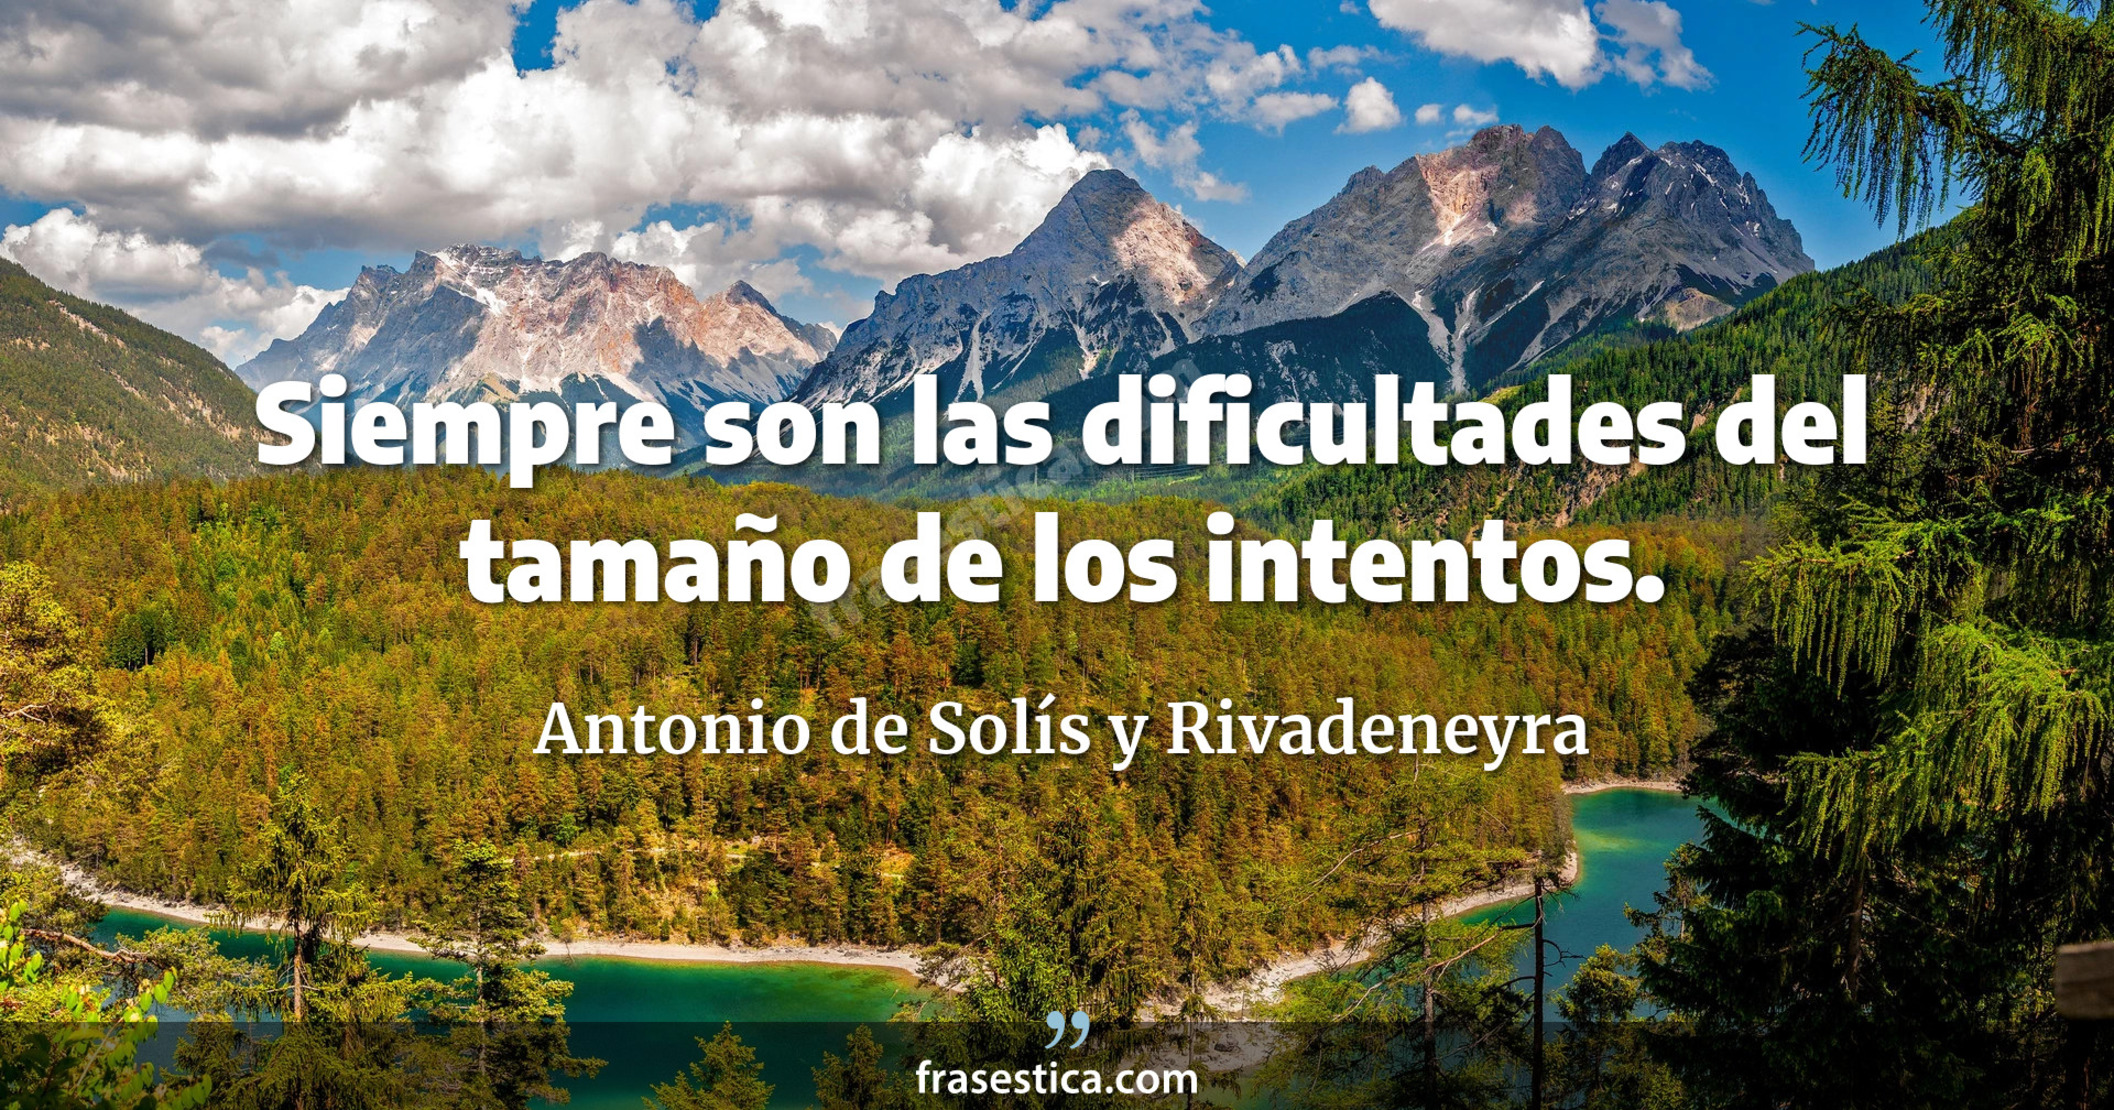 Siempre son las dificultades del tamaño de los intentos. - Antonio de Solís y Rivadeneyra